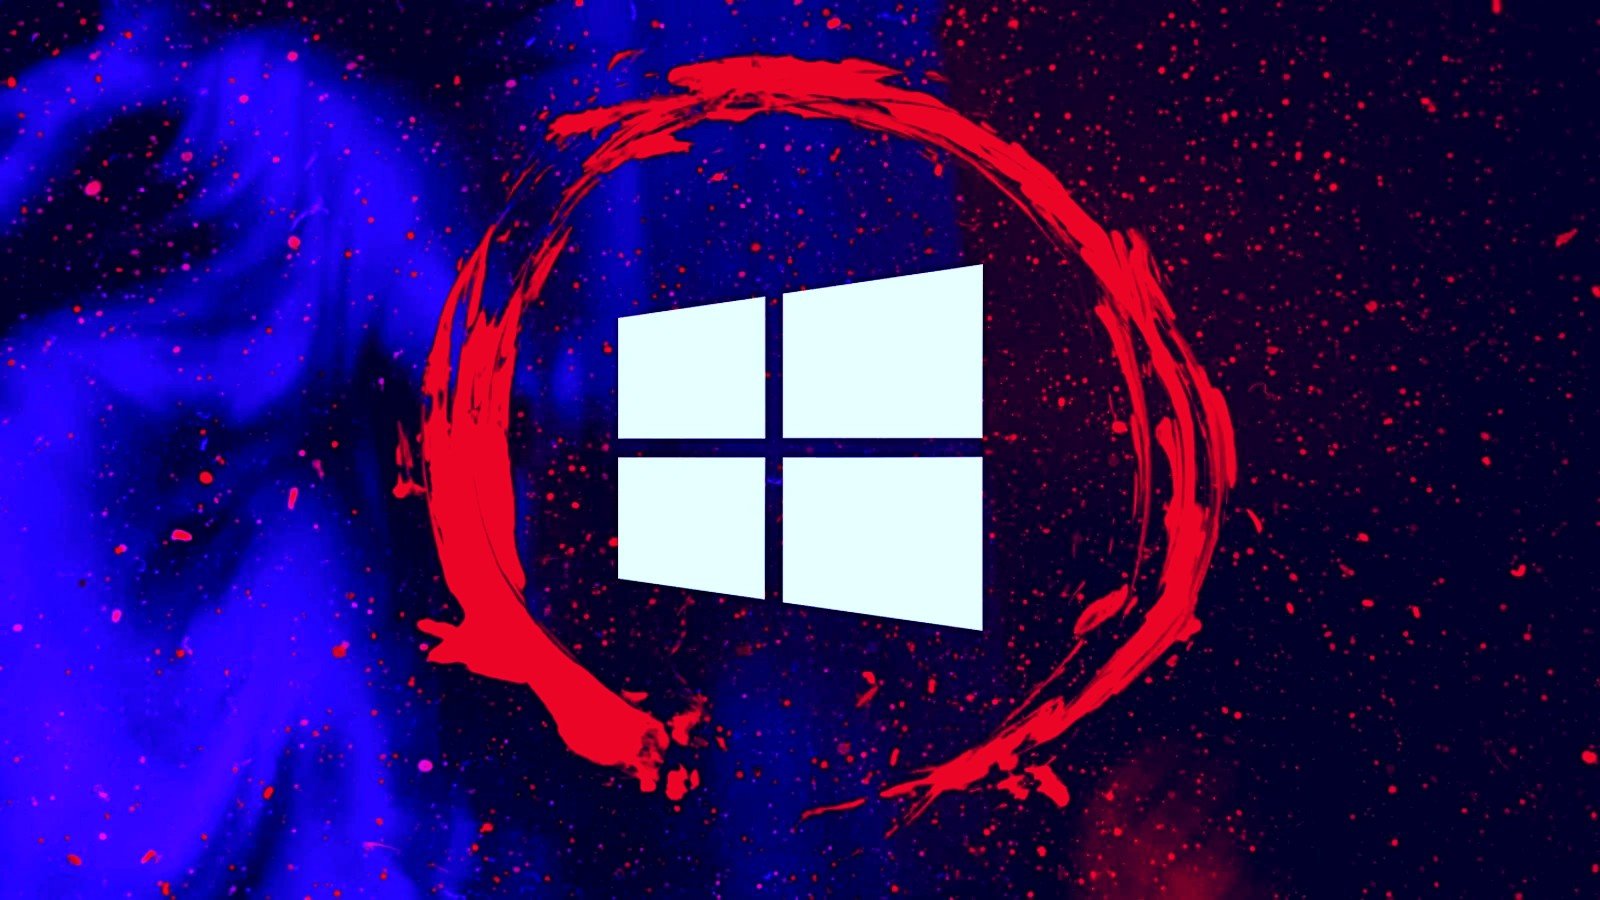 Windows attack